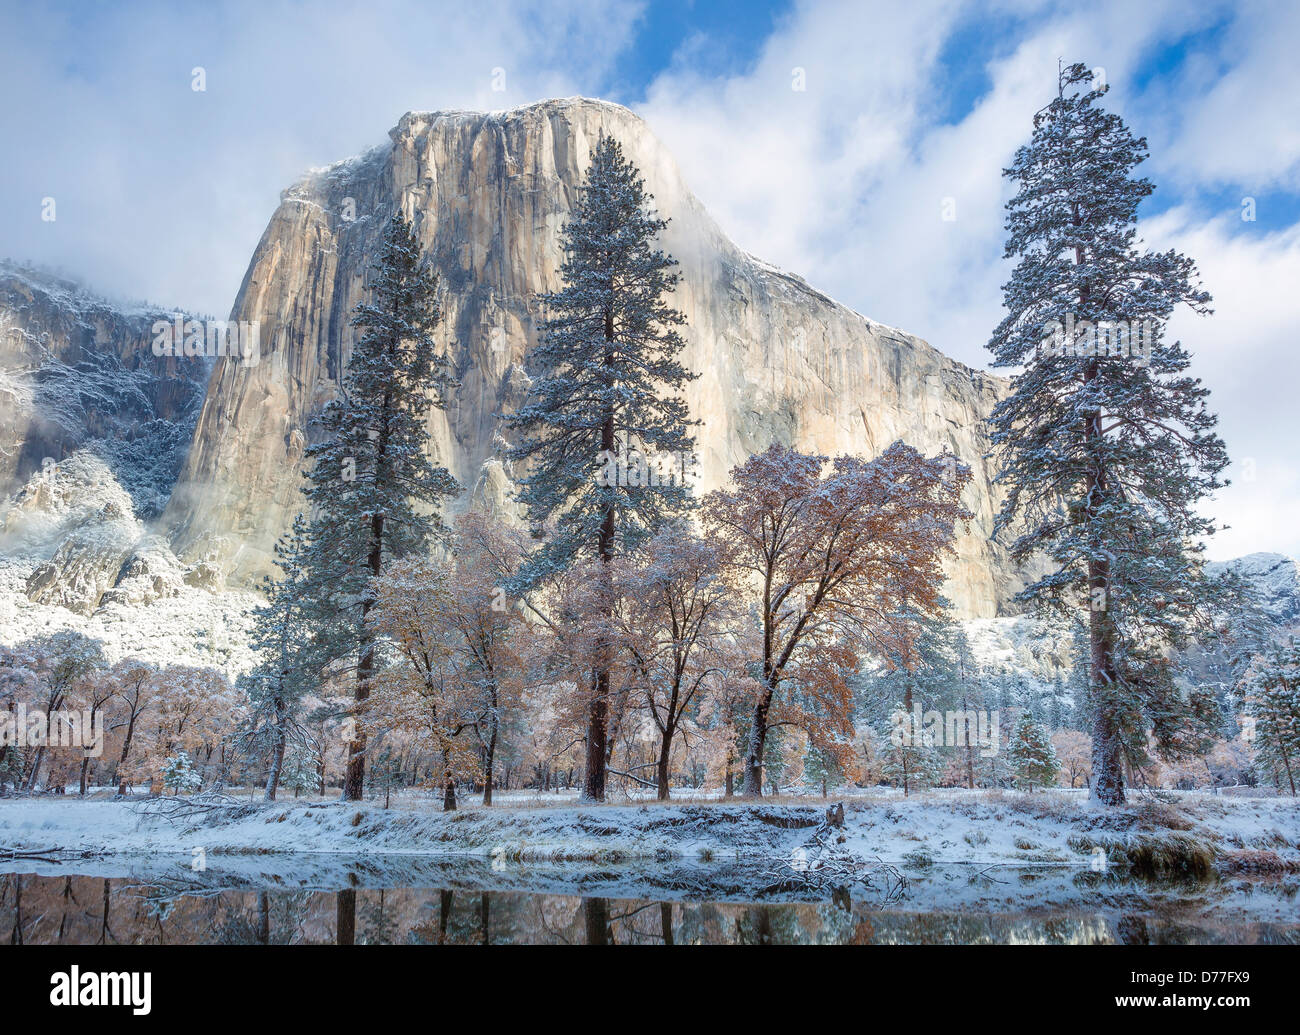 Parco Nazionale di Yosemite in California: El Capitan con calma riflessioni lungo il fiume Merced dopo una nevicata, tardo autunno. Foto Stock